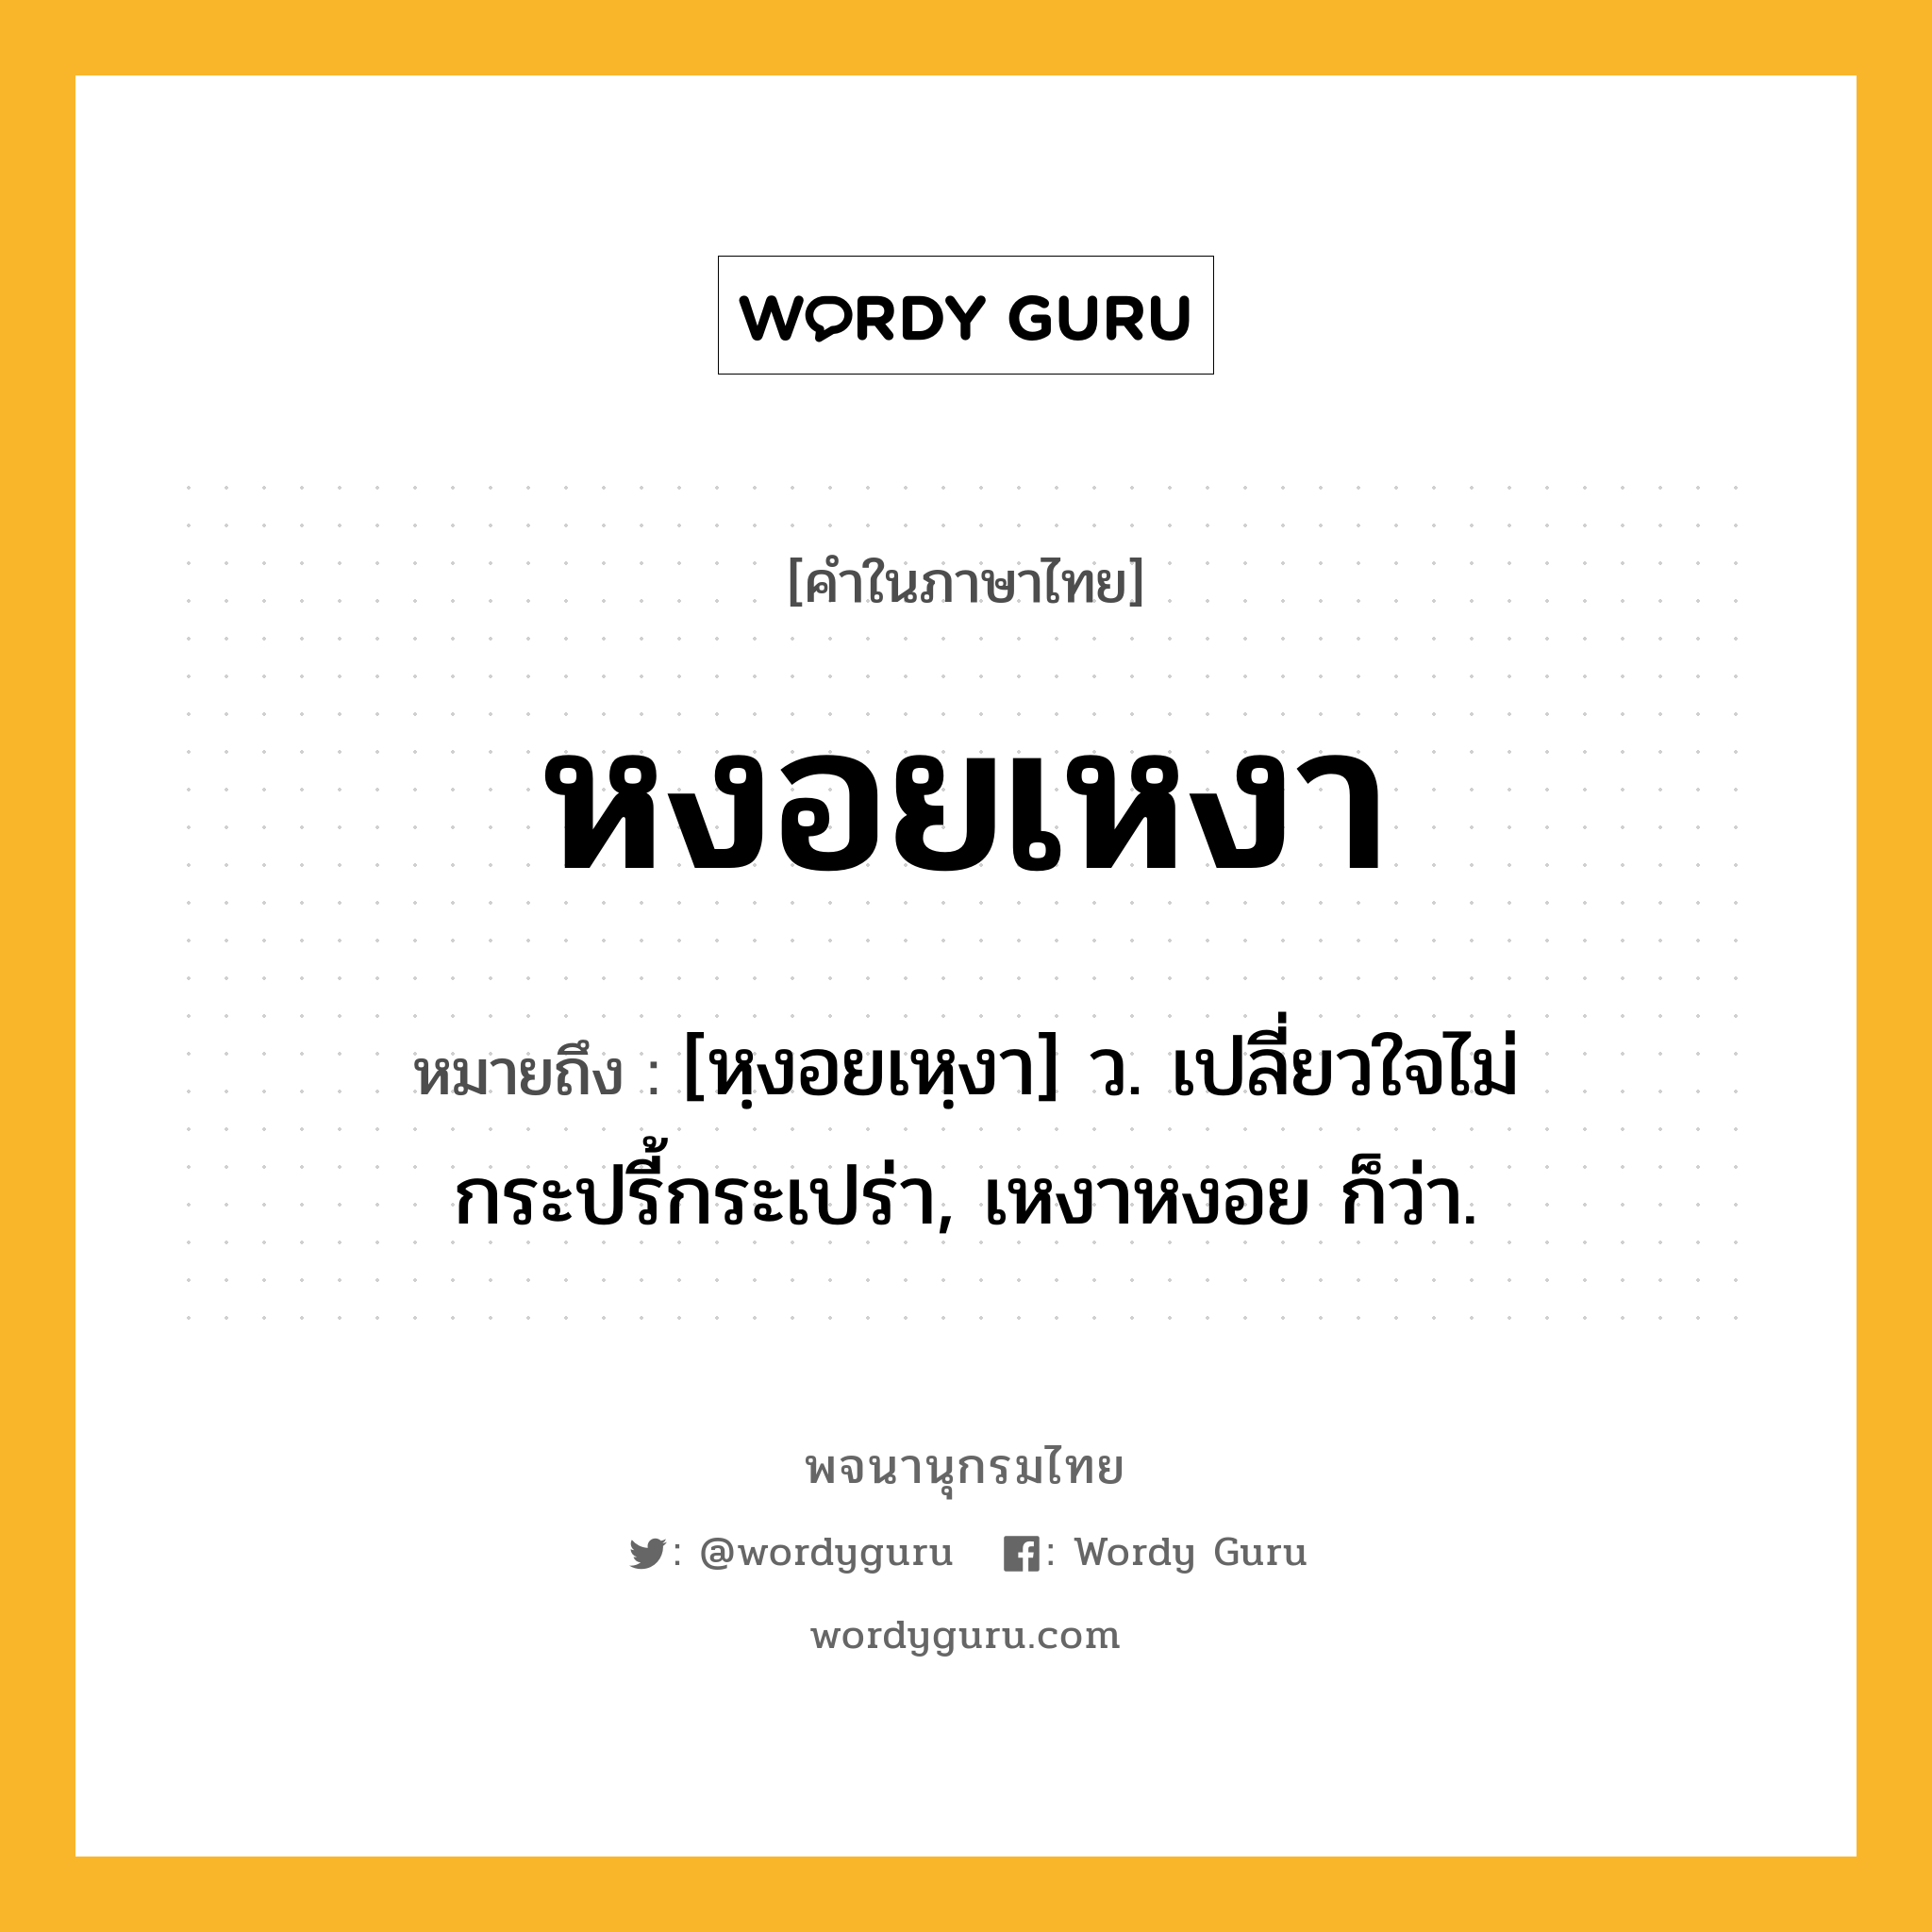 หงอยเหงา ความหมาย หมายถึงอะไร?, คำในภาษาไทย หงอยเหงา หมายถึง [หฺงอยเหฺงา] ว. เปลี่ยวใจไม่กระปรี้กระเปร่า, เหงาหงอย ก็ว่า.